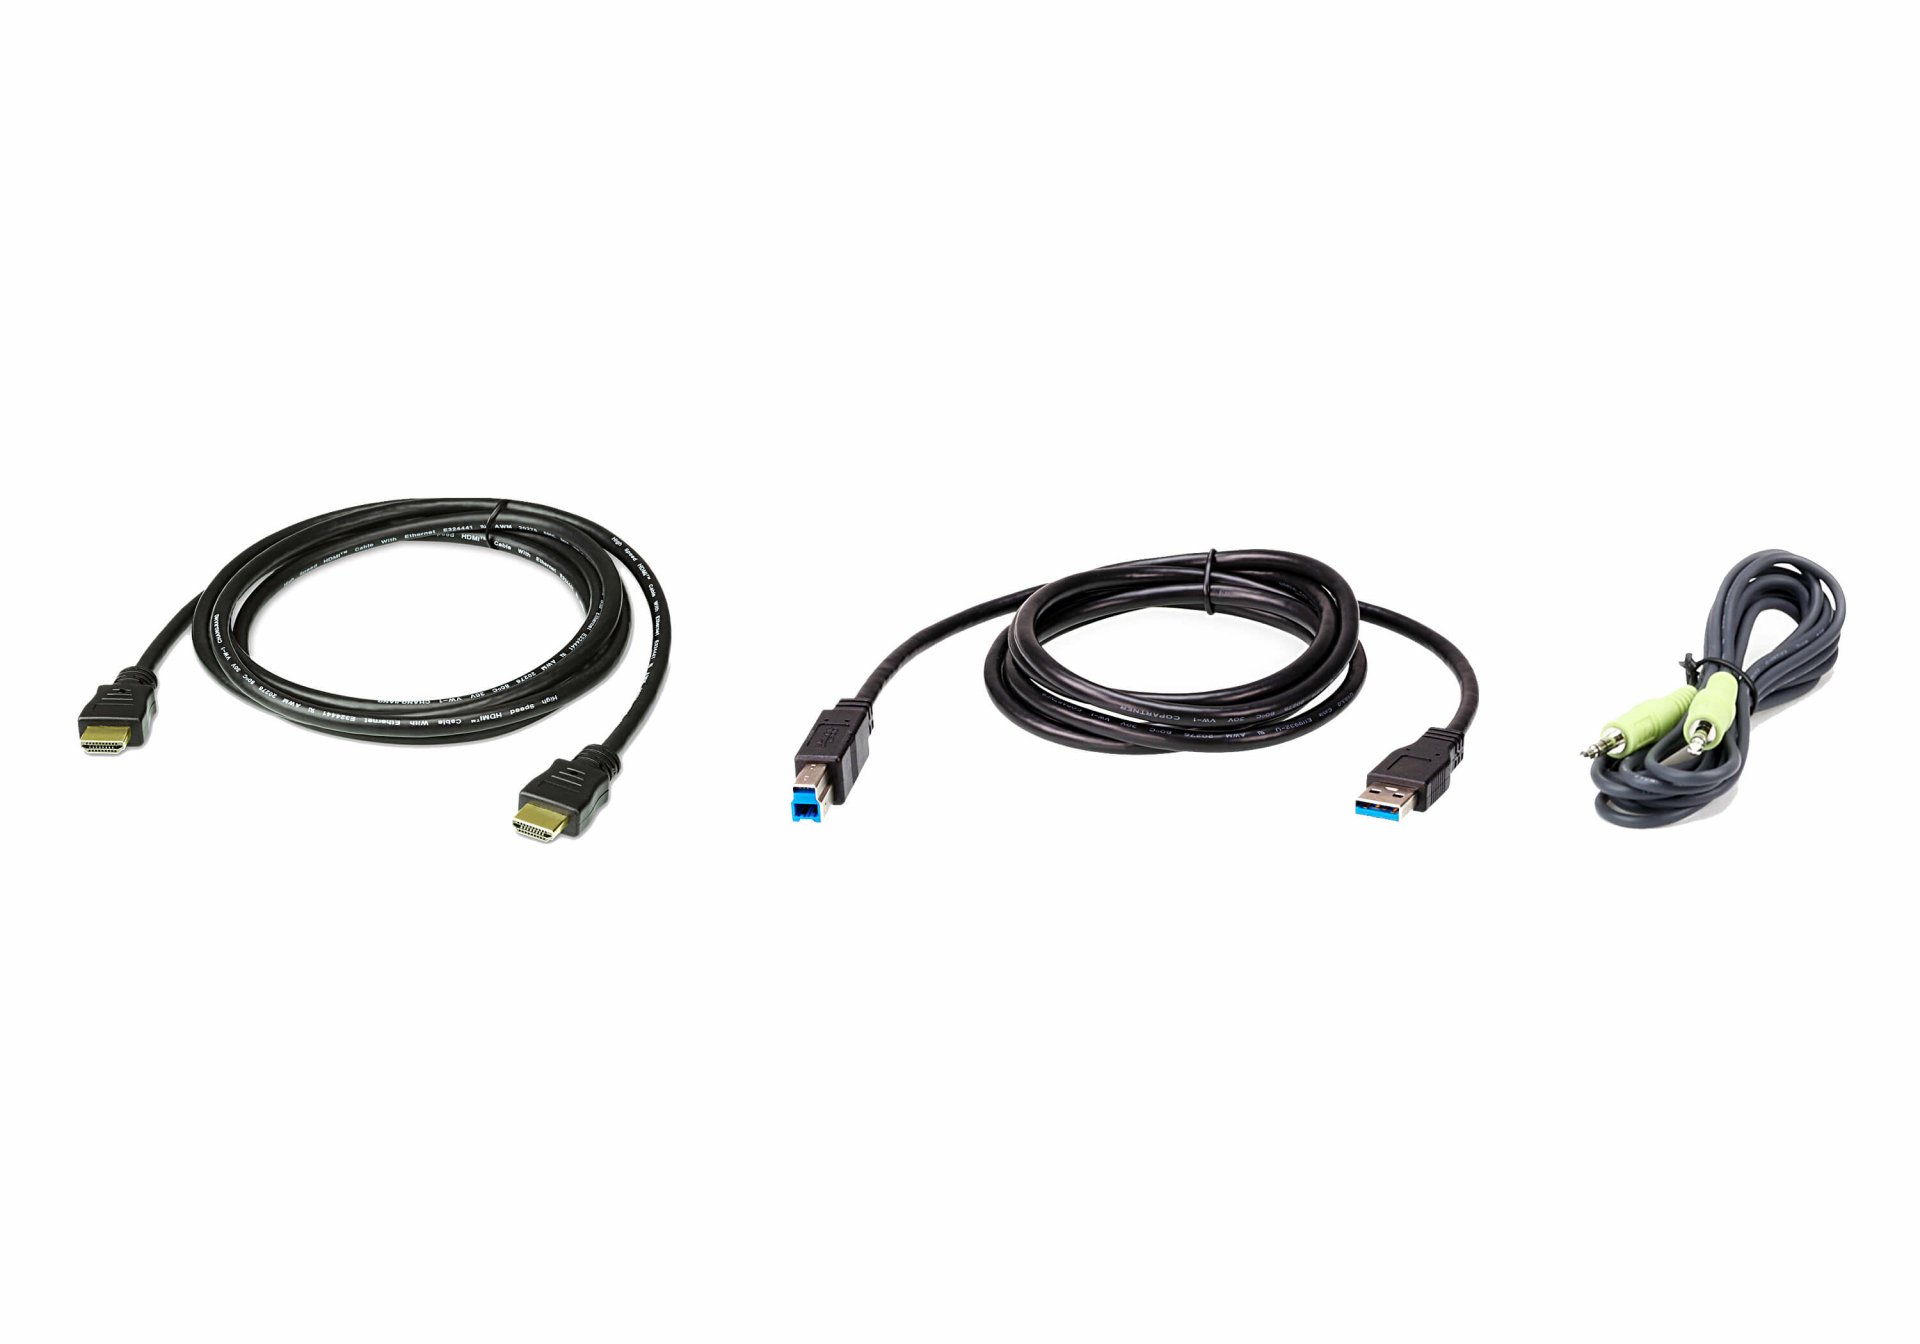 2L-7D02UHX3 : 1.8M USB HDMI KVM Cable Kit